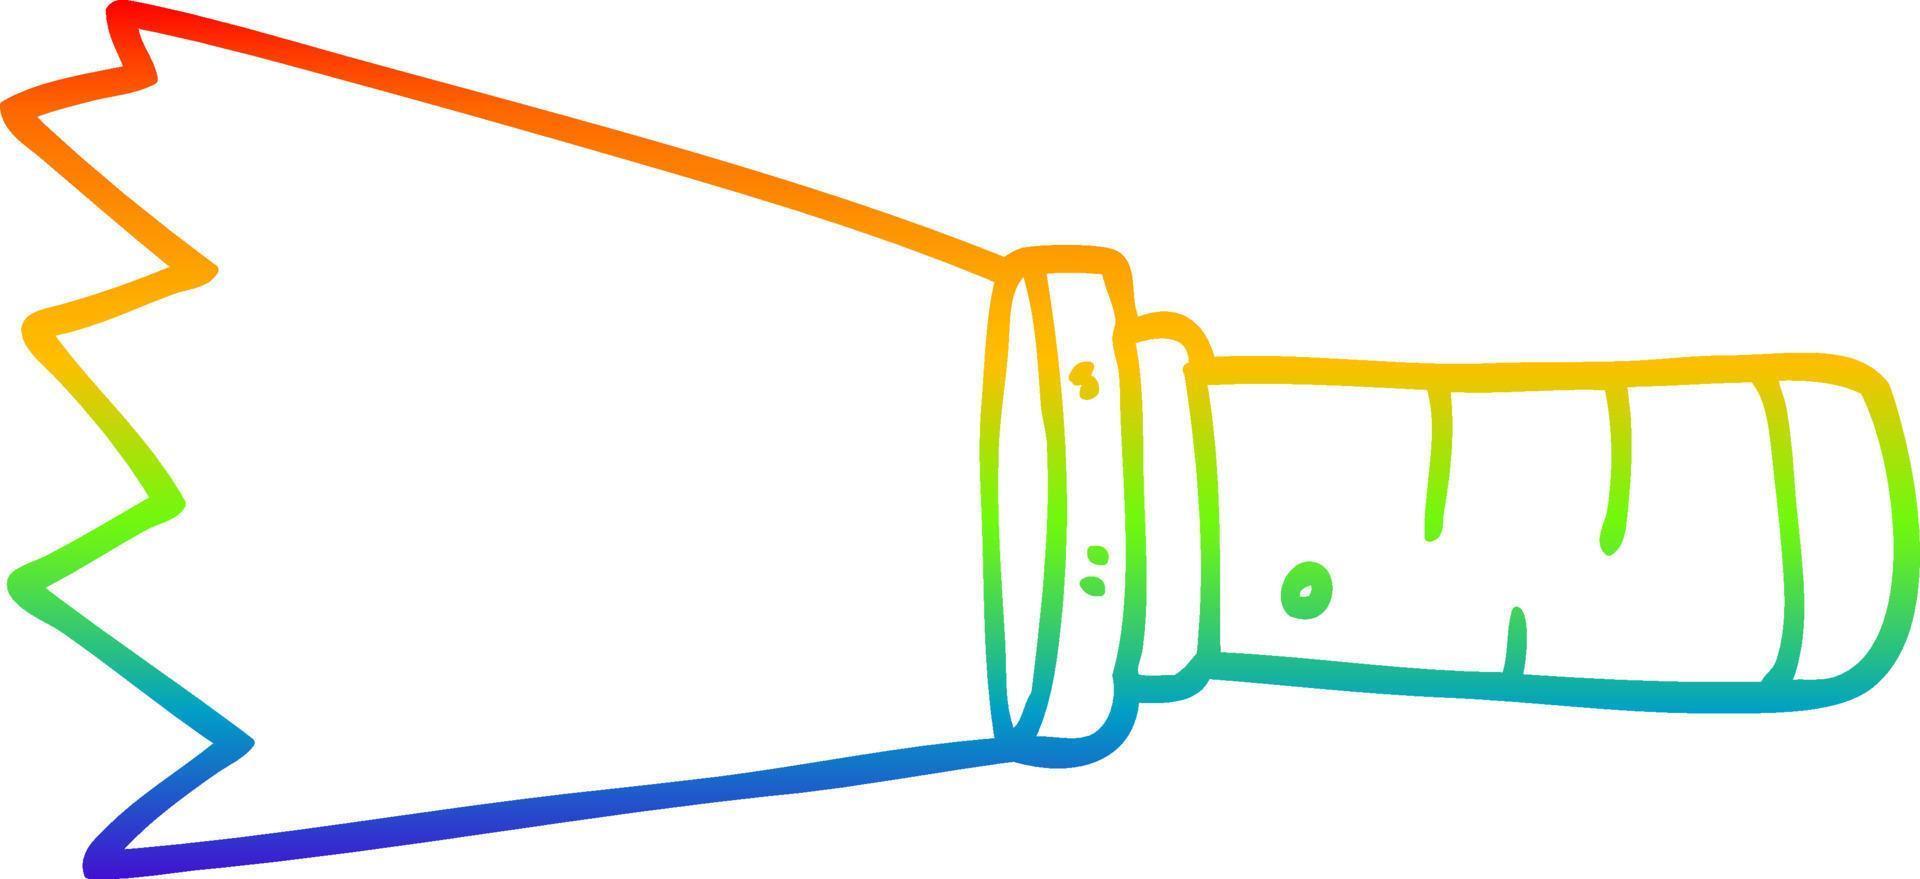 arco iris gradiente línea dibujo dibujos animados antorcha encendida vector